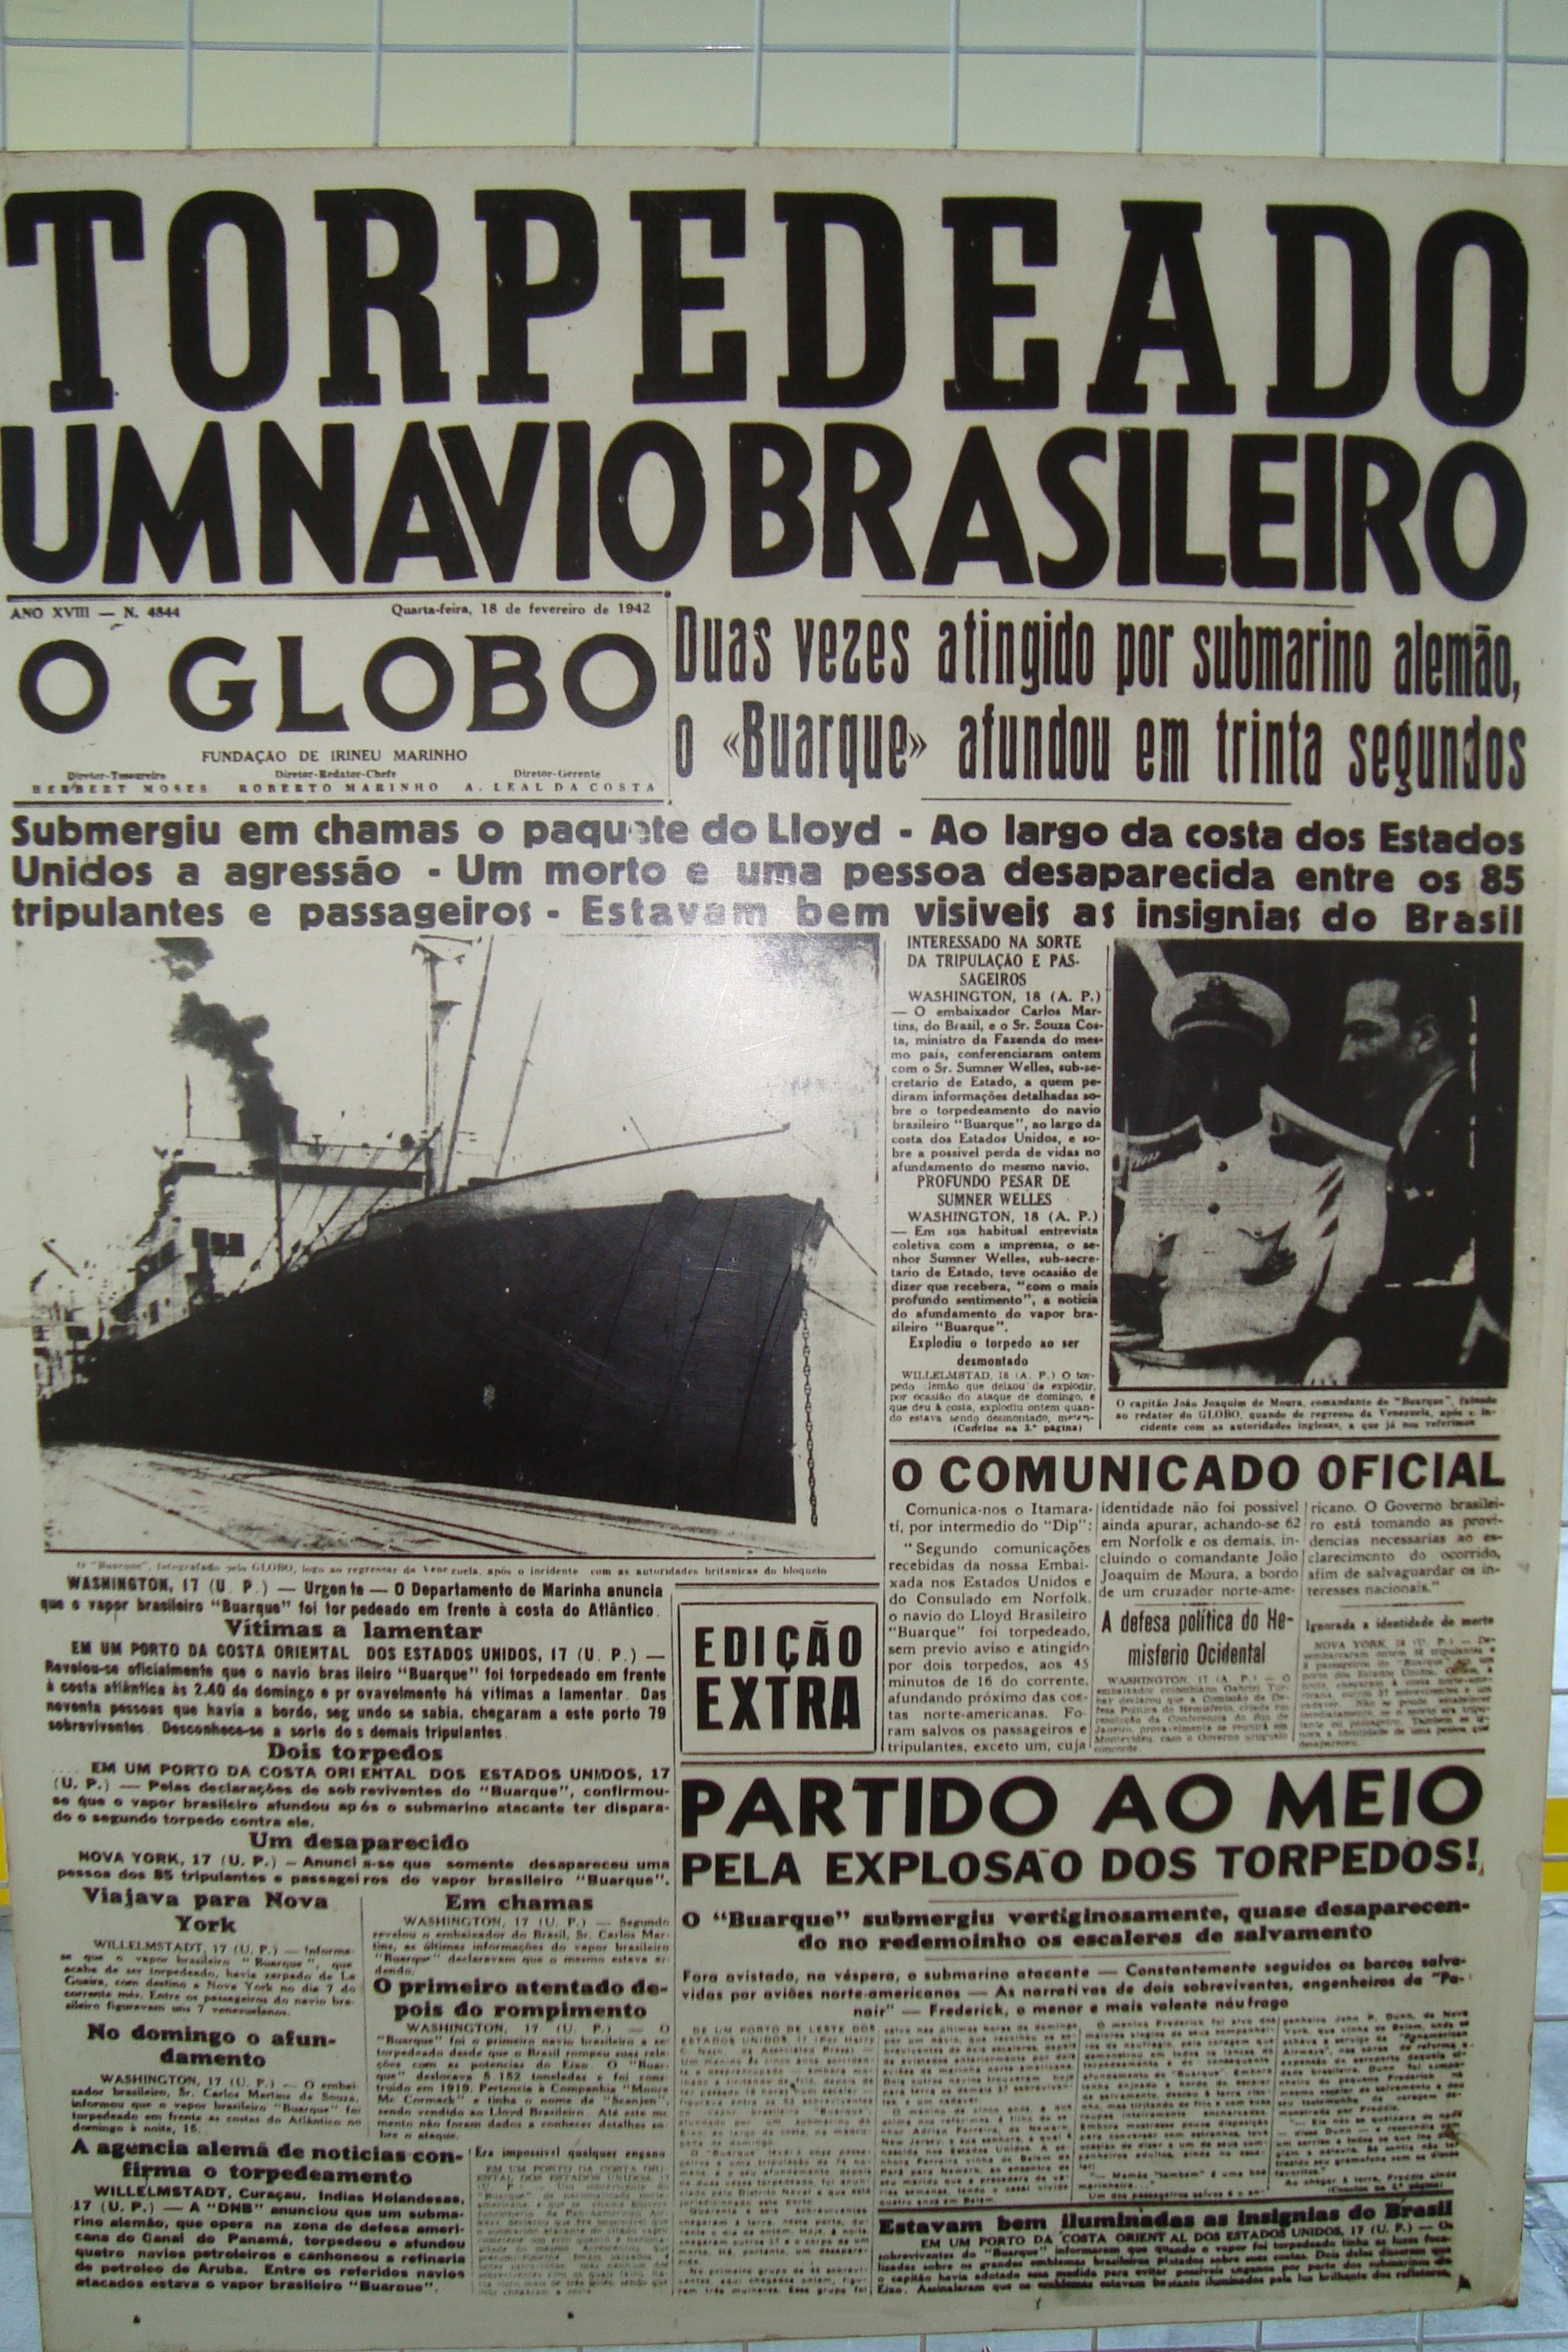 Durante suas pesquisas, historiadora encontra jornais denunciando os torpedeamentos sofridos pelo Brasil. FOTO: Reprodução